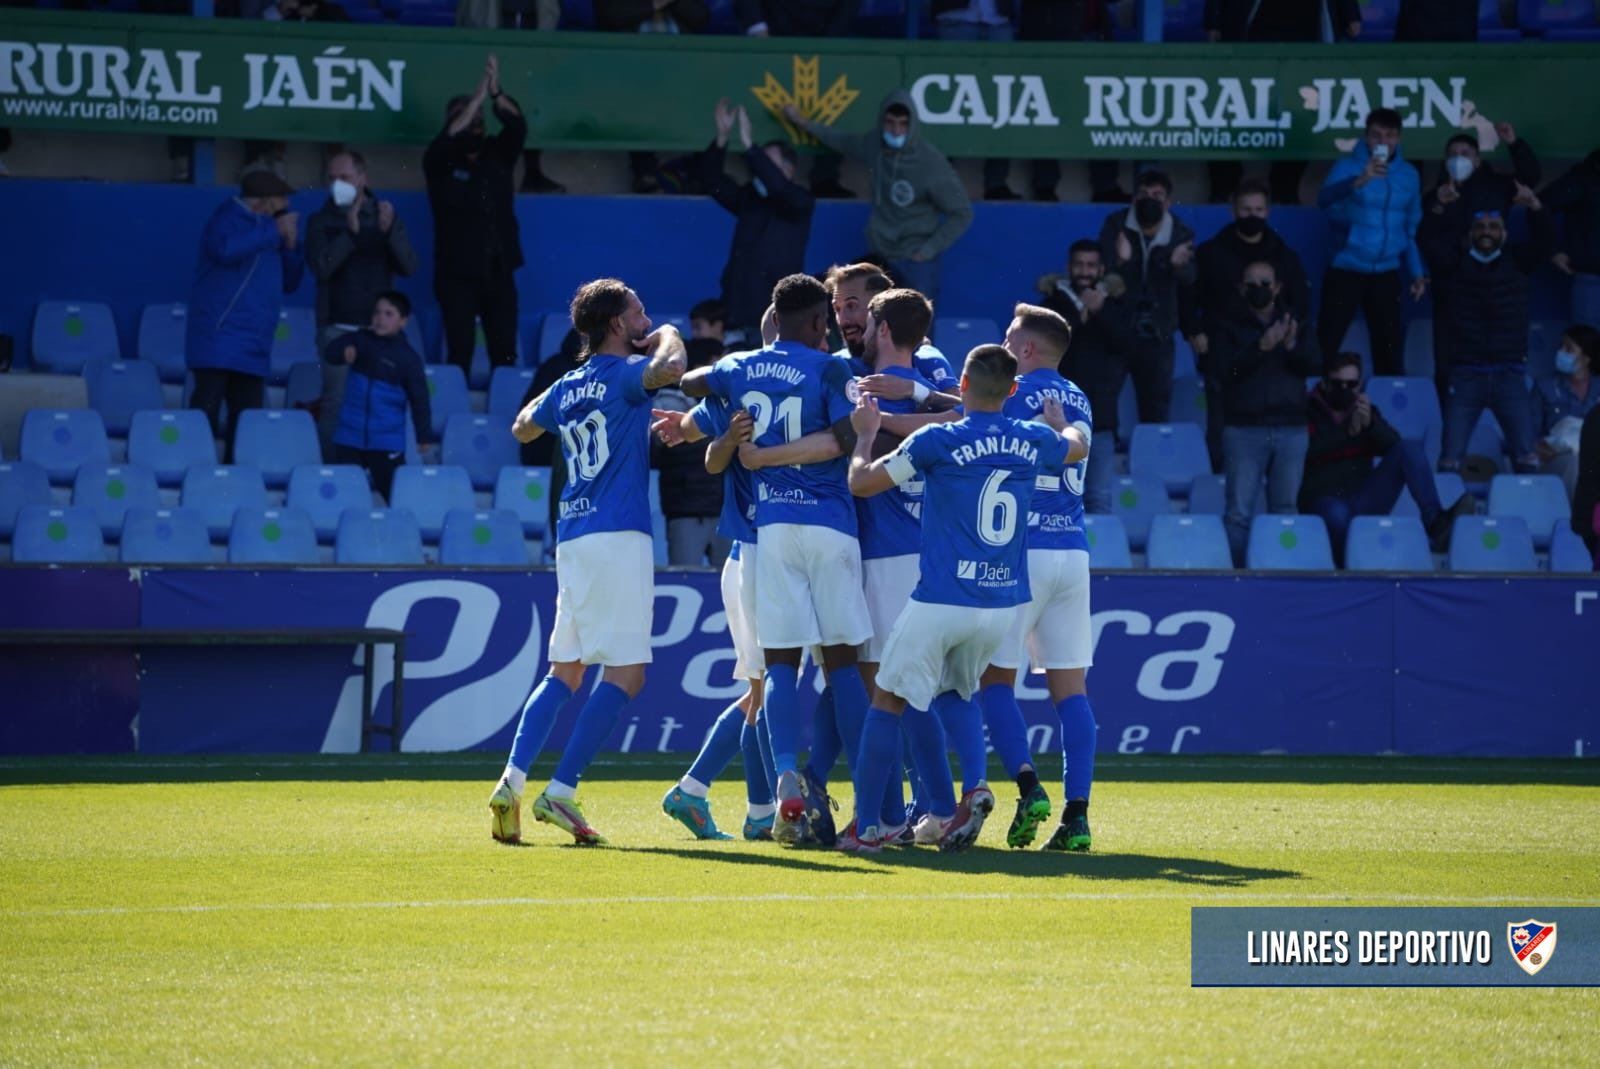 El Linares Deportivo celebra el gol de Josema | Foto: @Linares_Dptvo